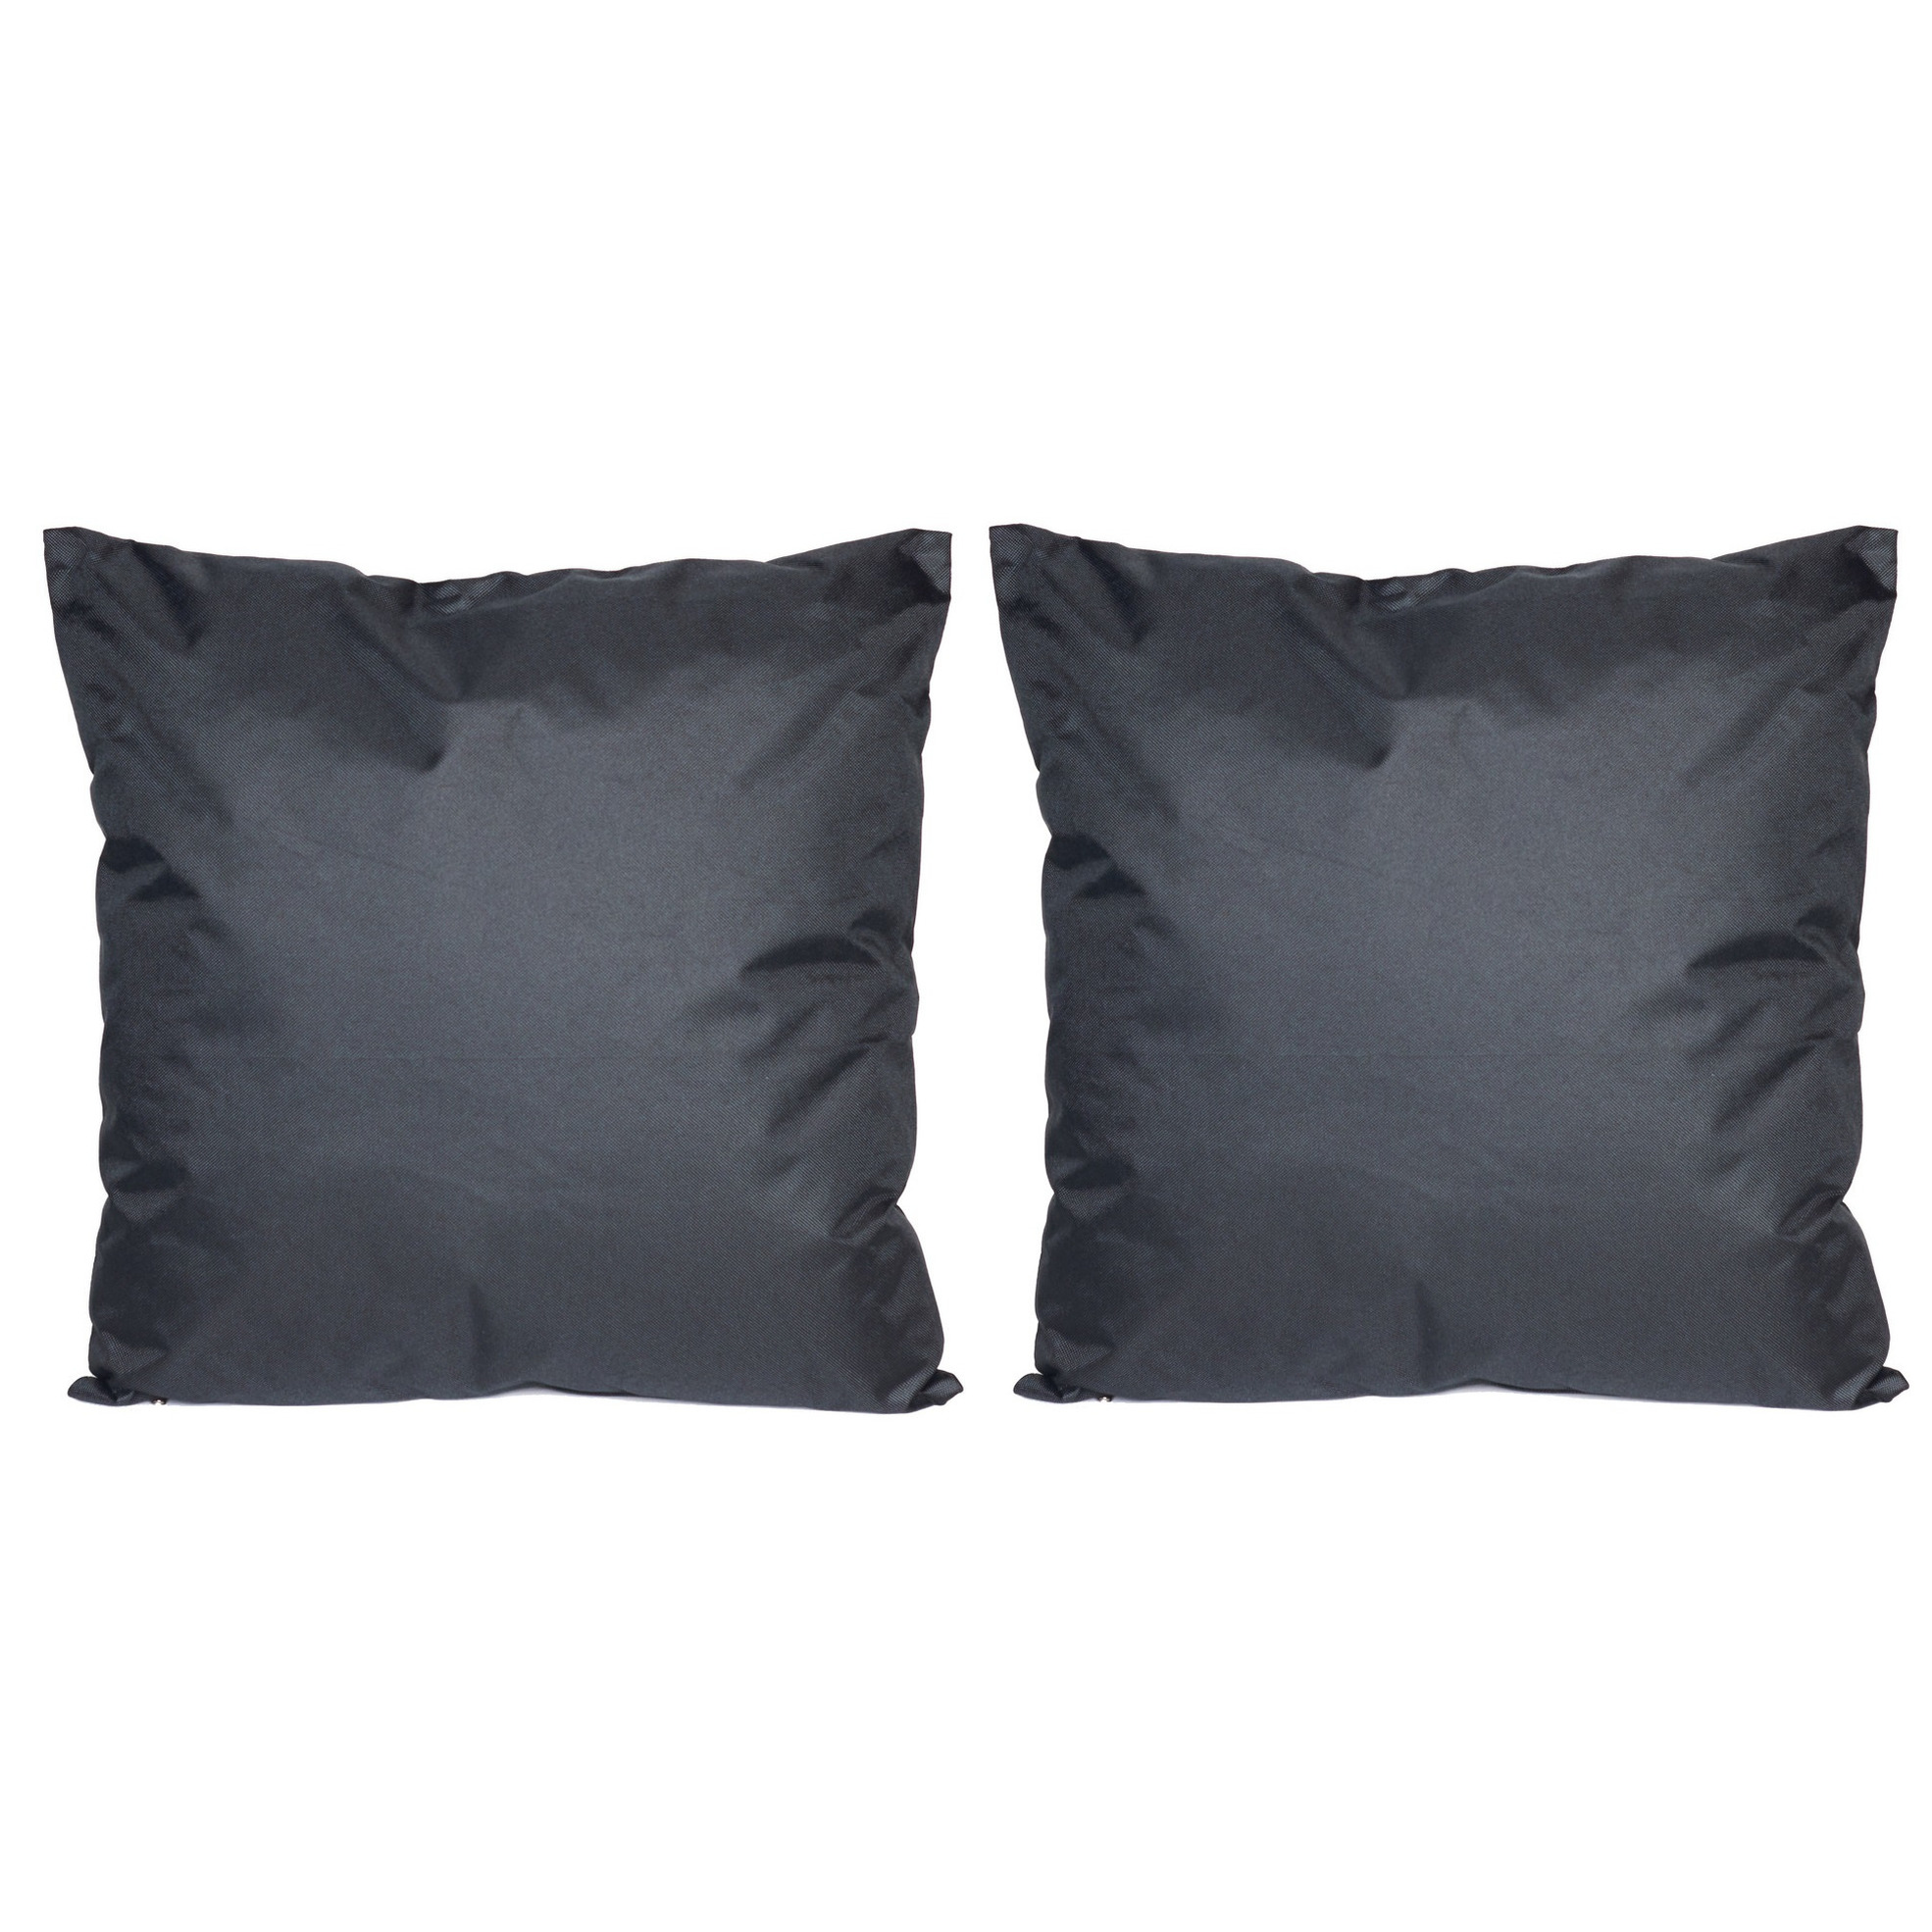 8x Bank-sier kussens voor binnen en buiten in de kleur zwart 45 x 45 cm